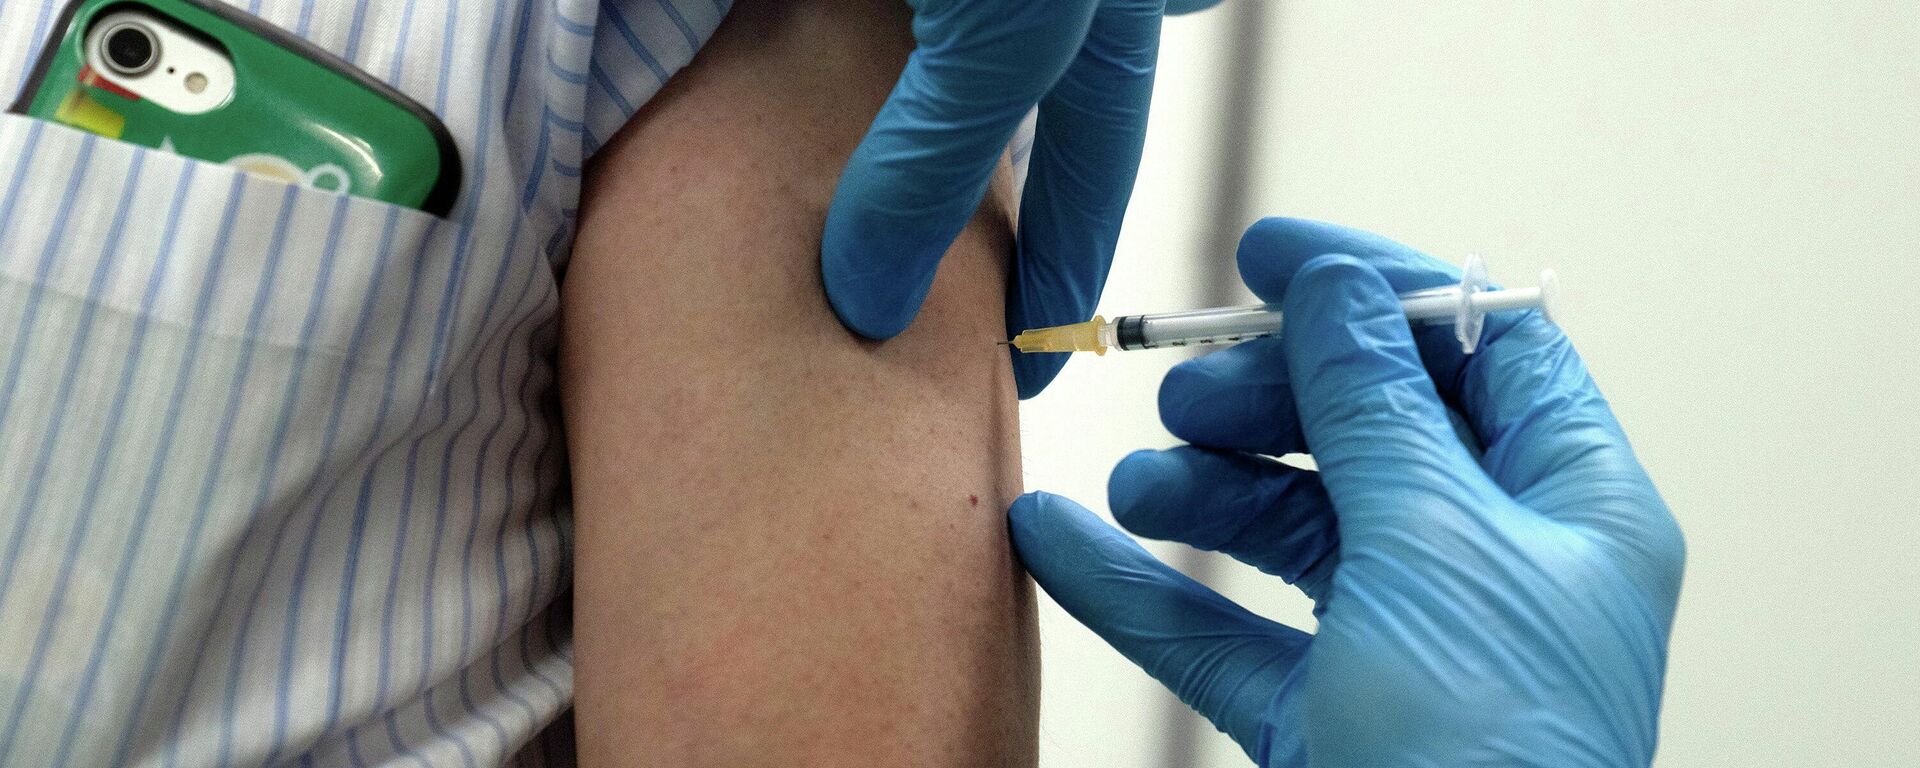 Медработник делает прививку от коронавируса вакциной Moderna - Sputnik Литва, 1920, 24.05.2021